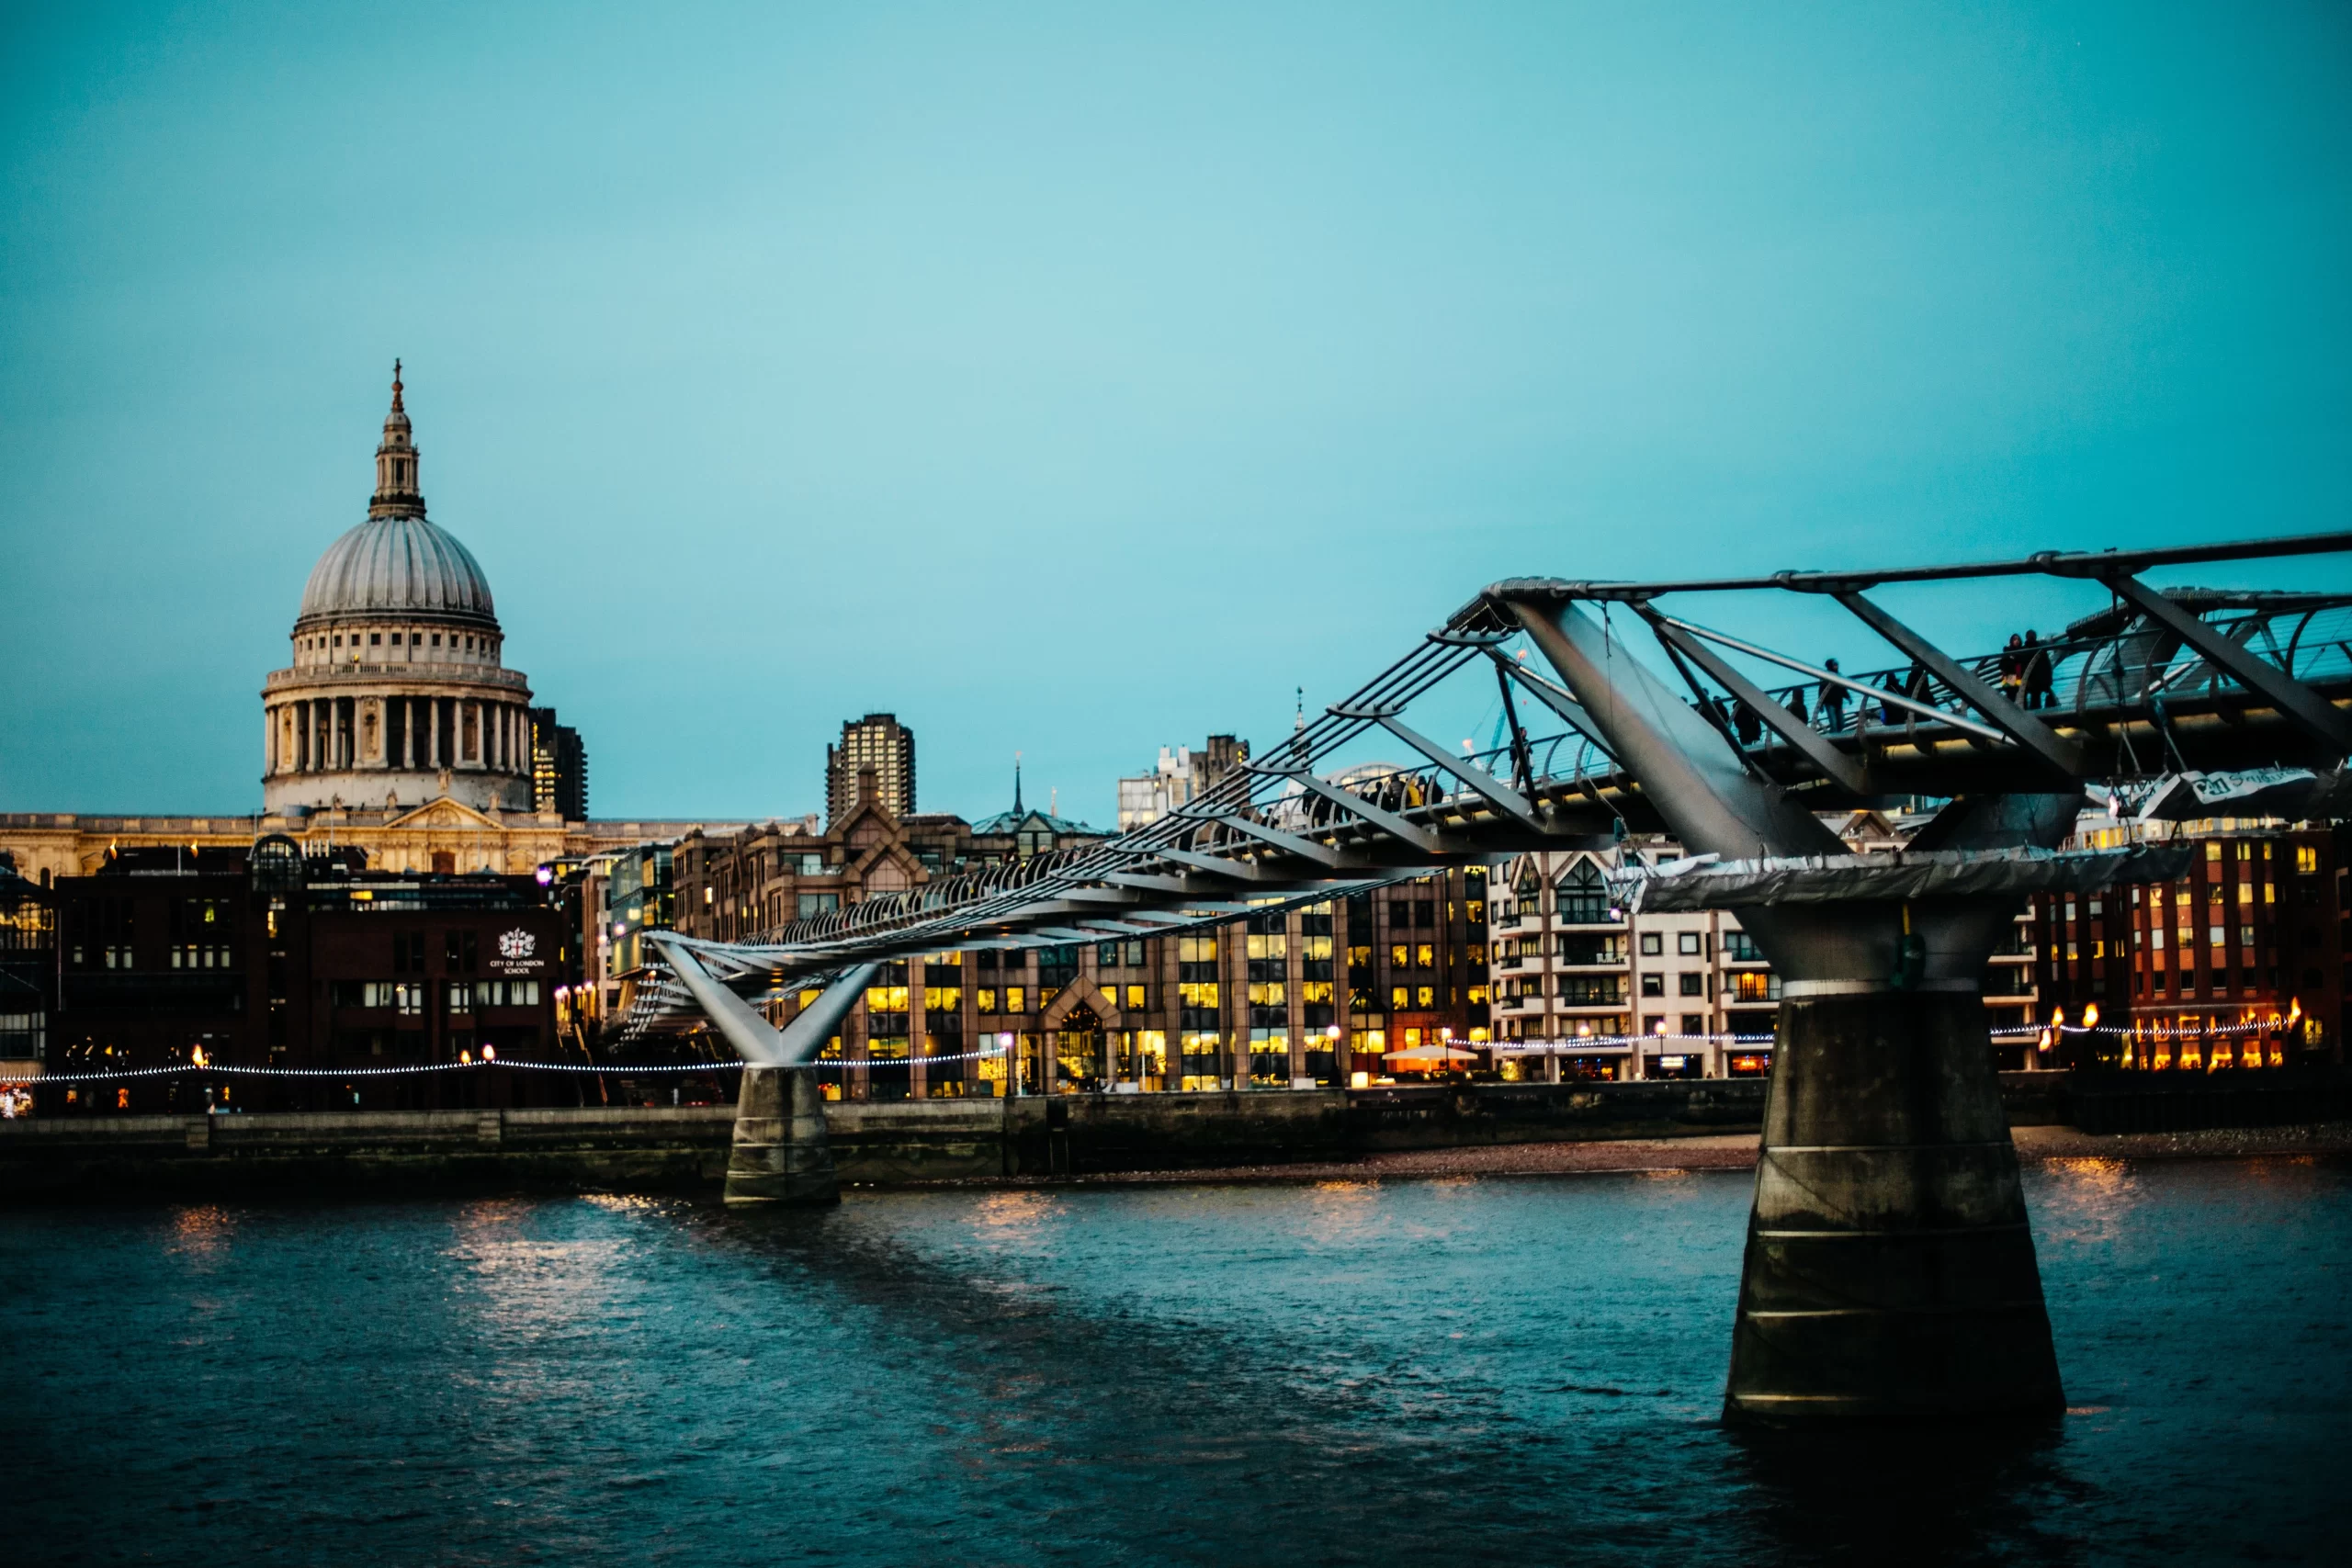 Millennium Bridge, London, Royaume-Uni Published on November 30, 2015 Canon, EOS 5D Mark II Free to use under the Unsplash License